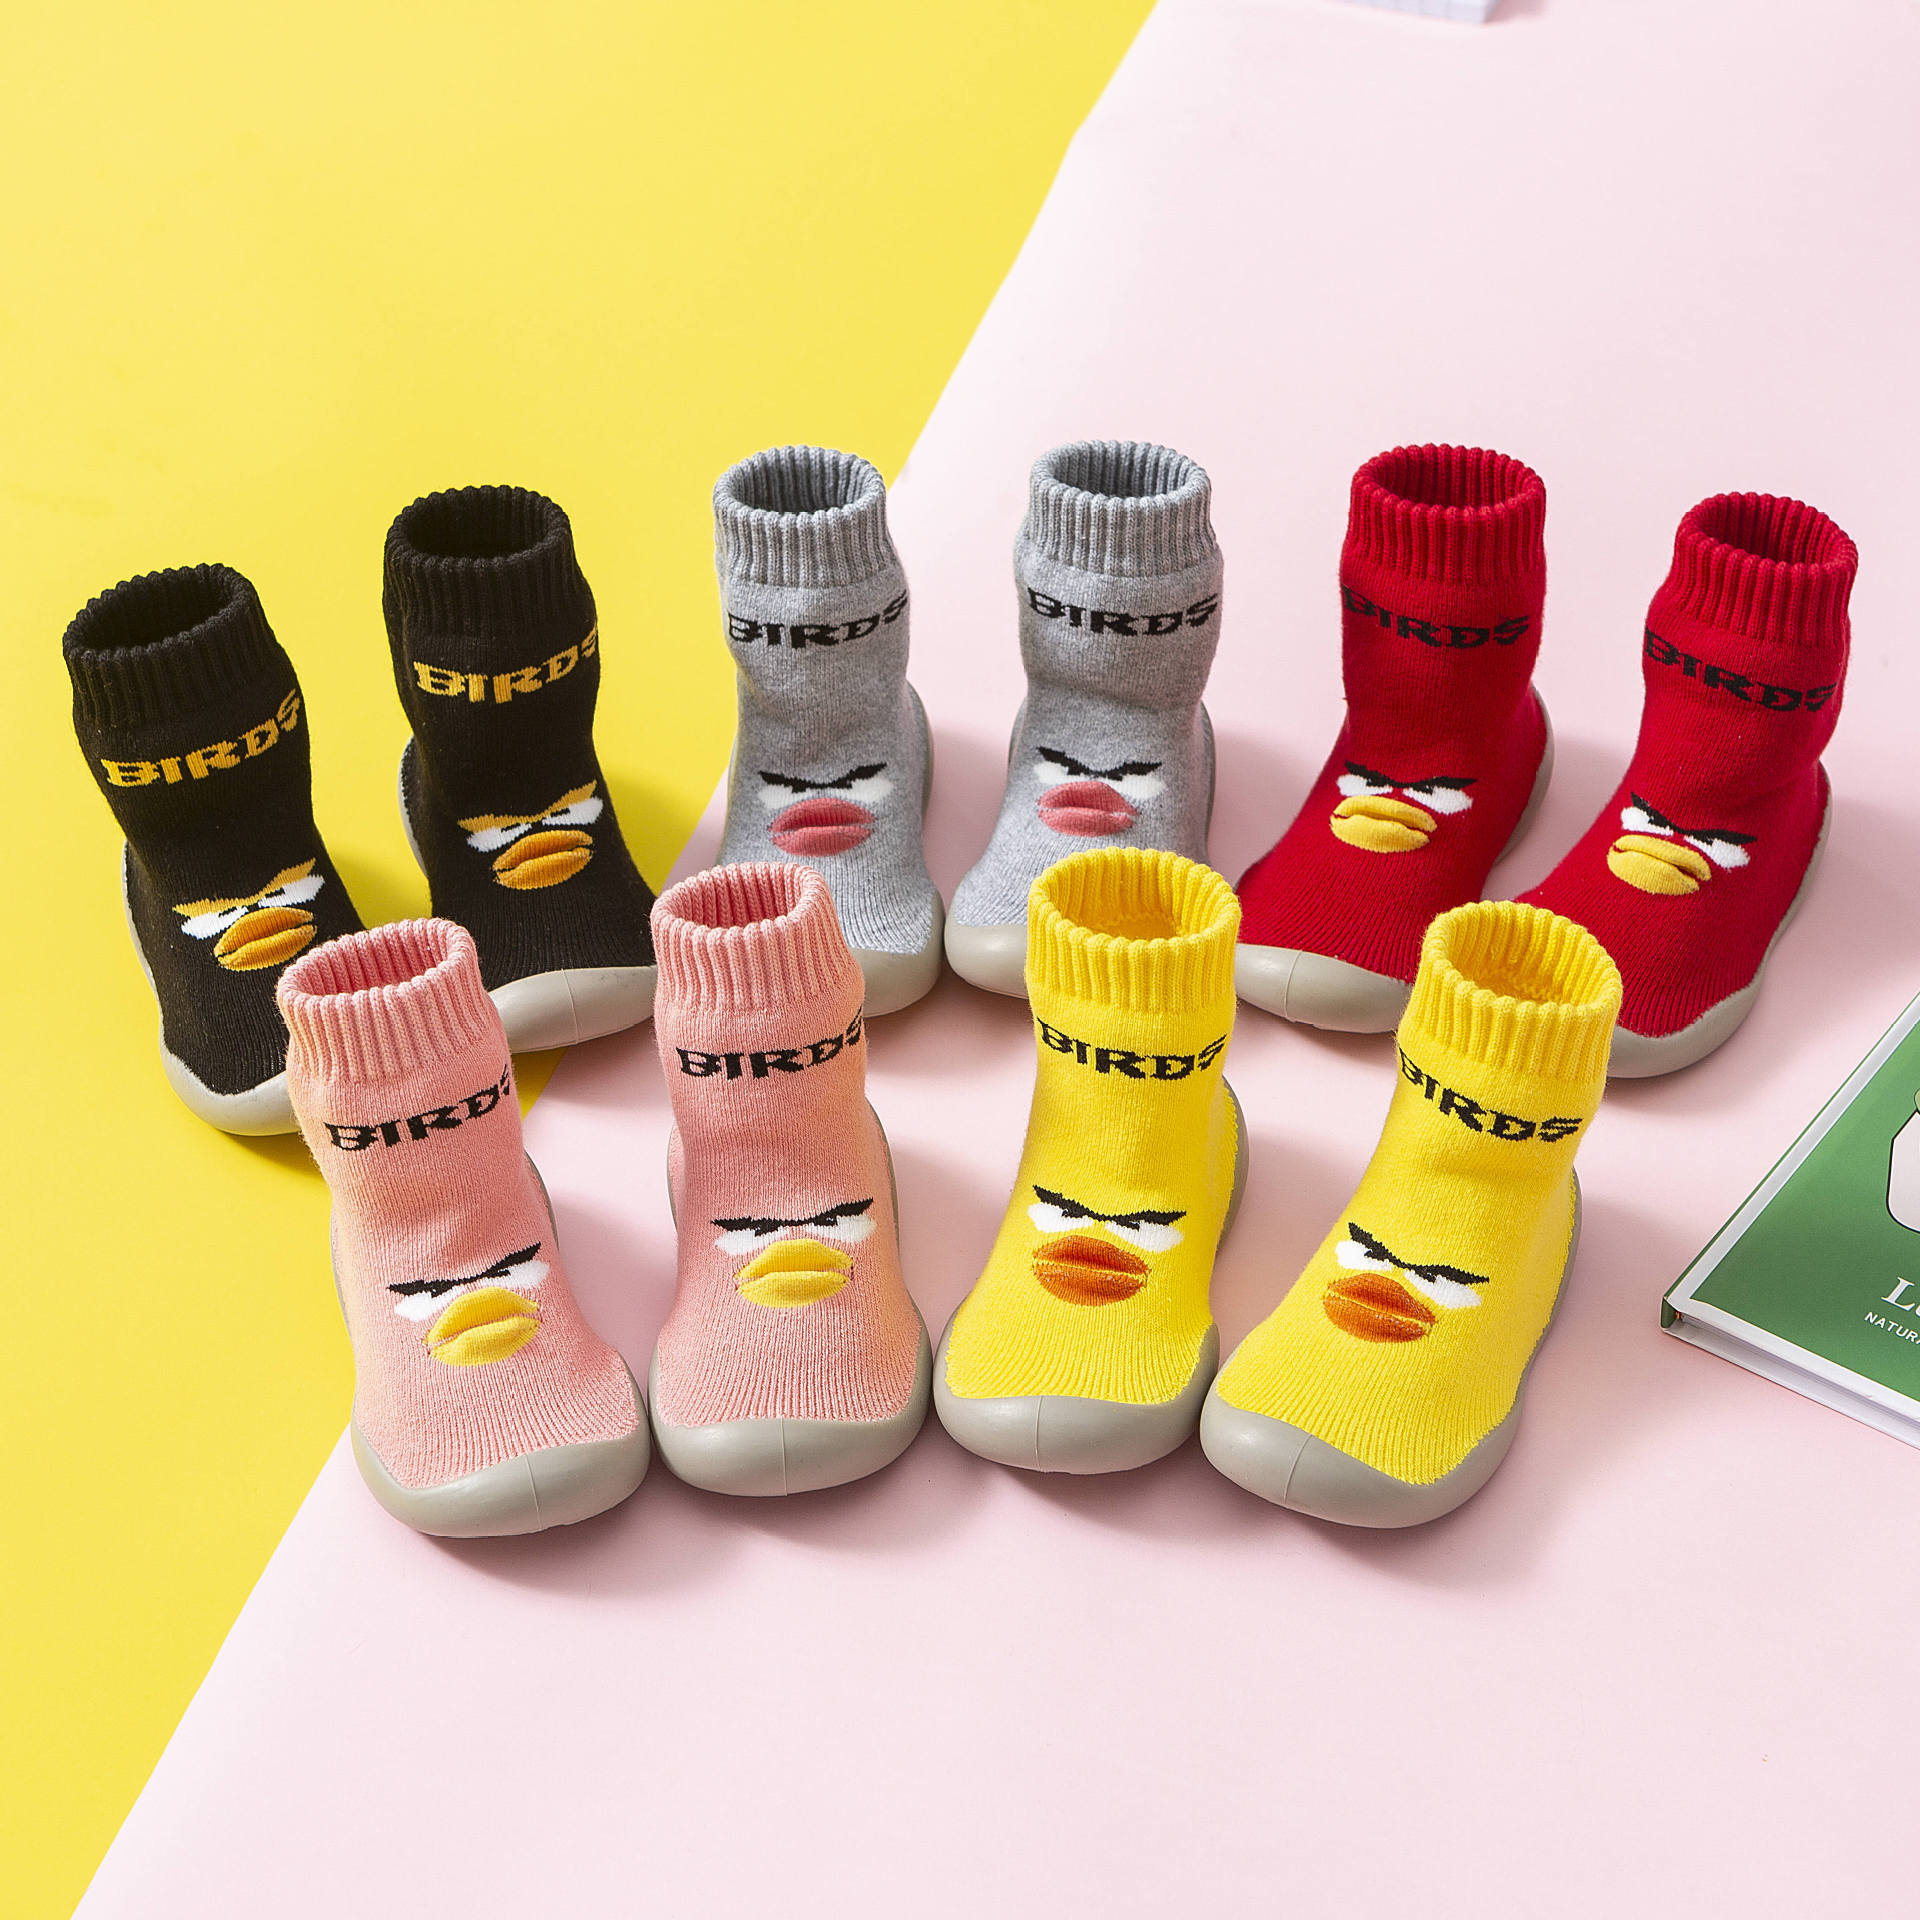 2019 korean style children‘s floor socks big toe shoes children‘s socks soft bottom baby toddler shoes socks non-slip rubber bottom light step shoes